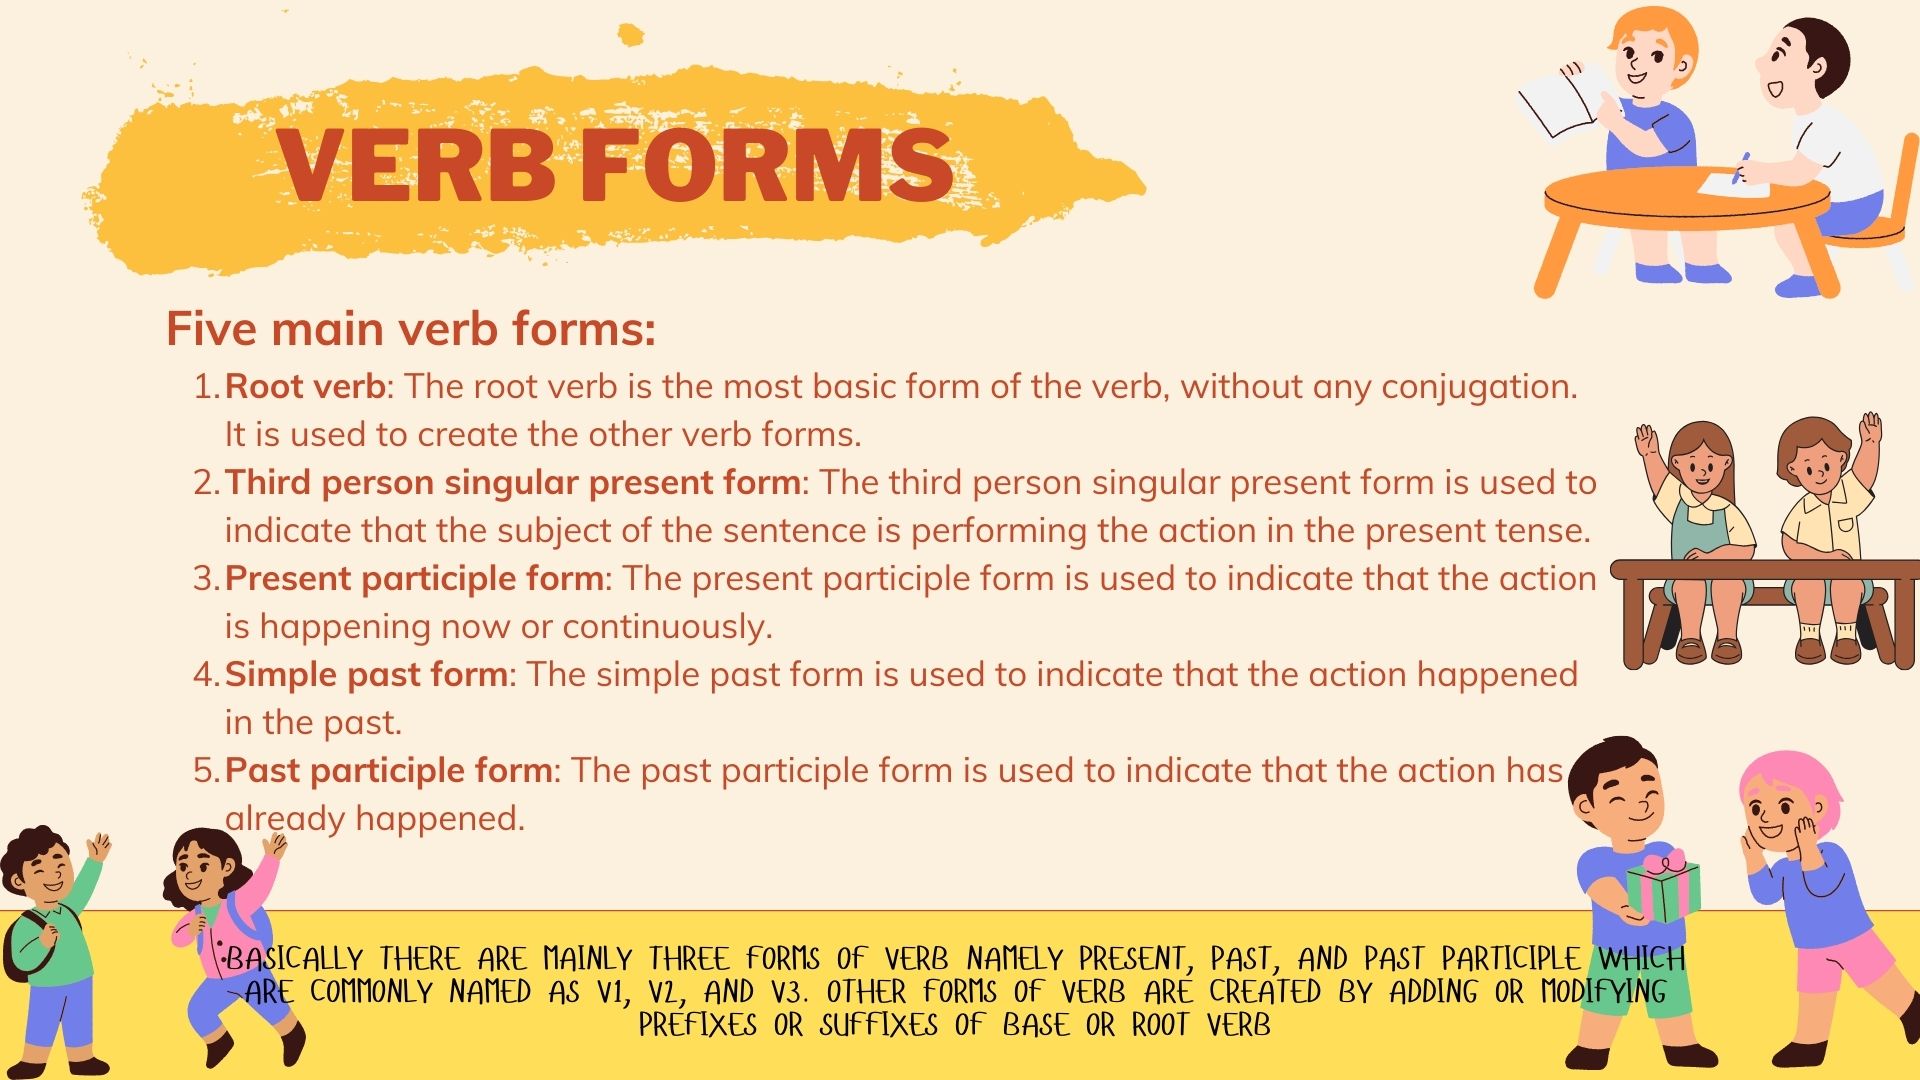 Main Verbs forms - *Wordstock* - Quora